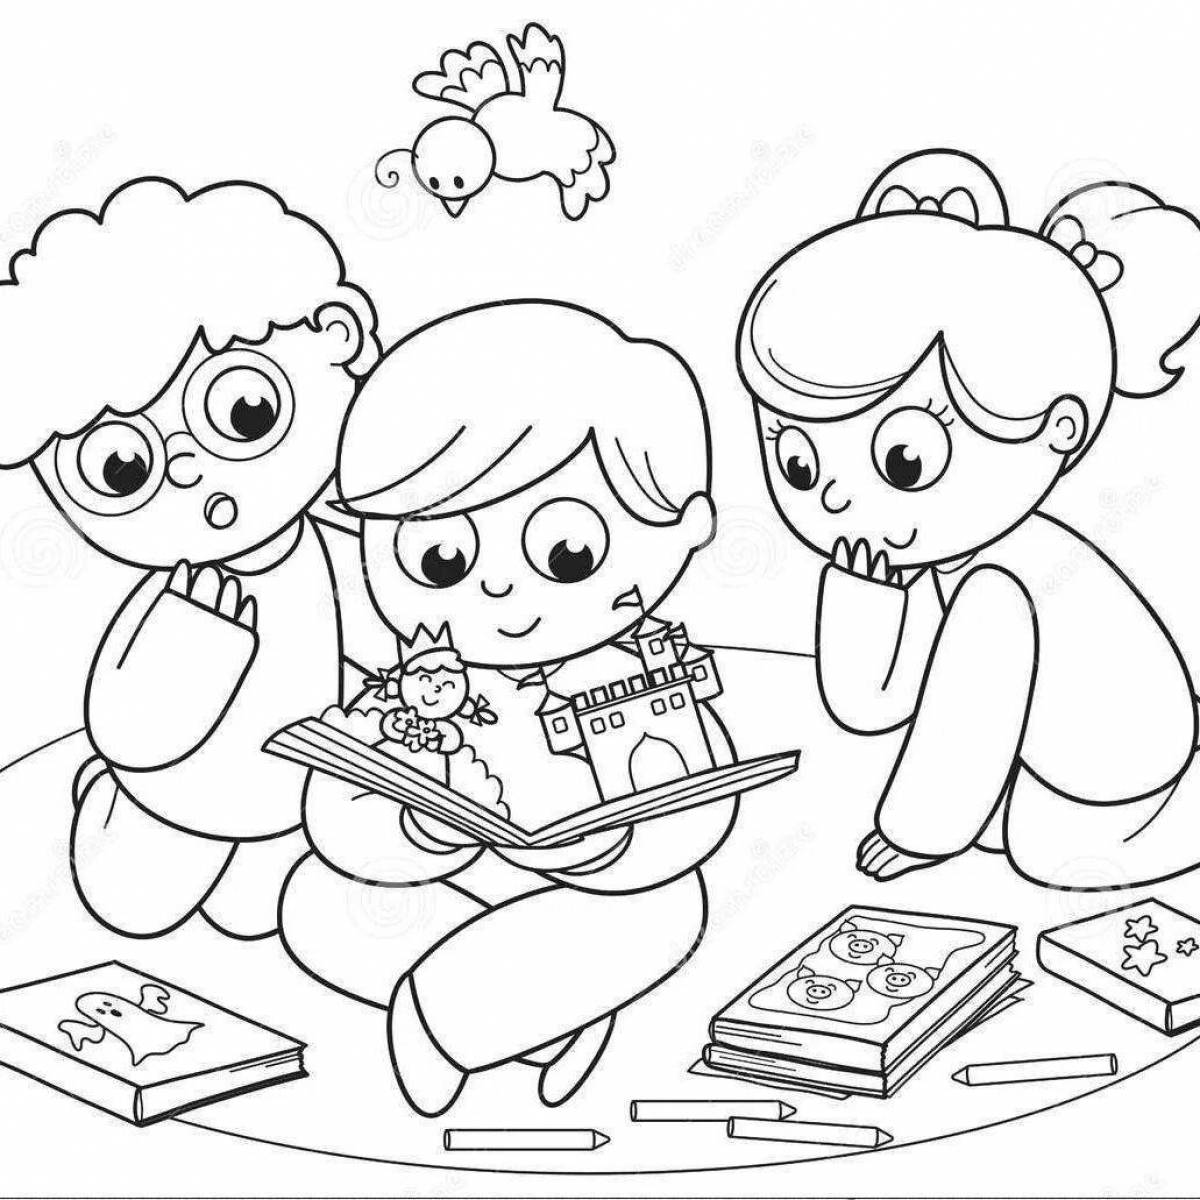 Книжка-раскраска для детей, мальчик читает книгу